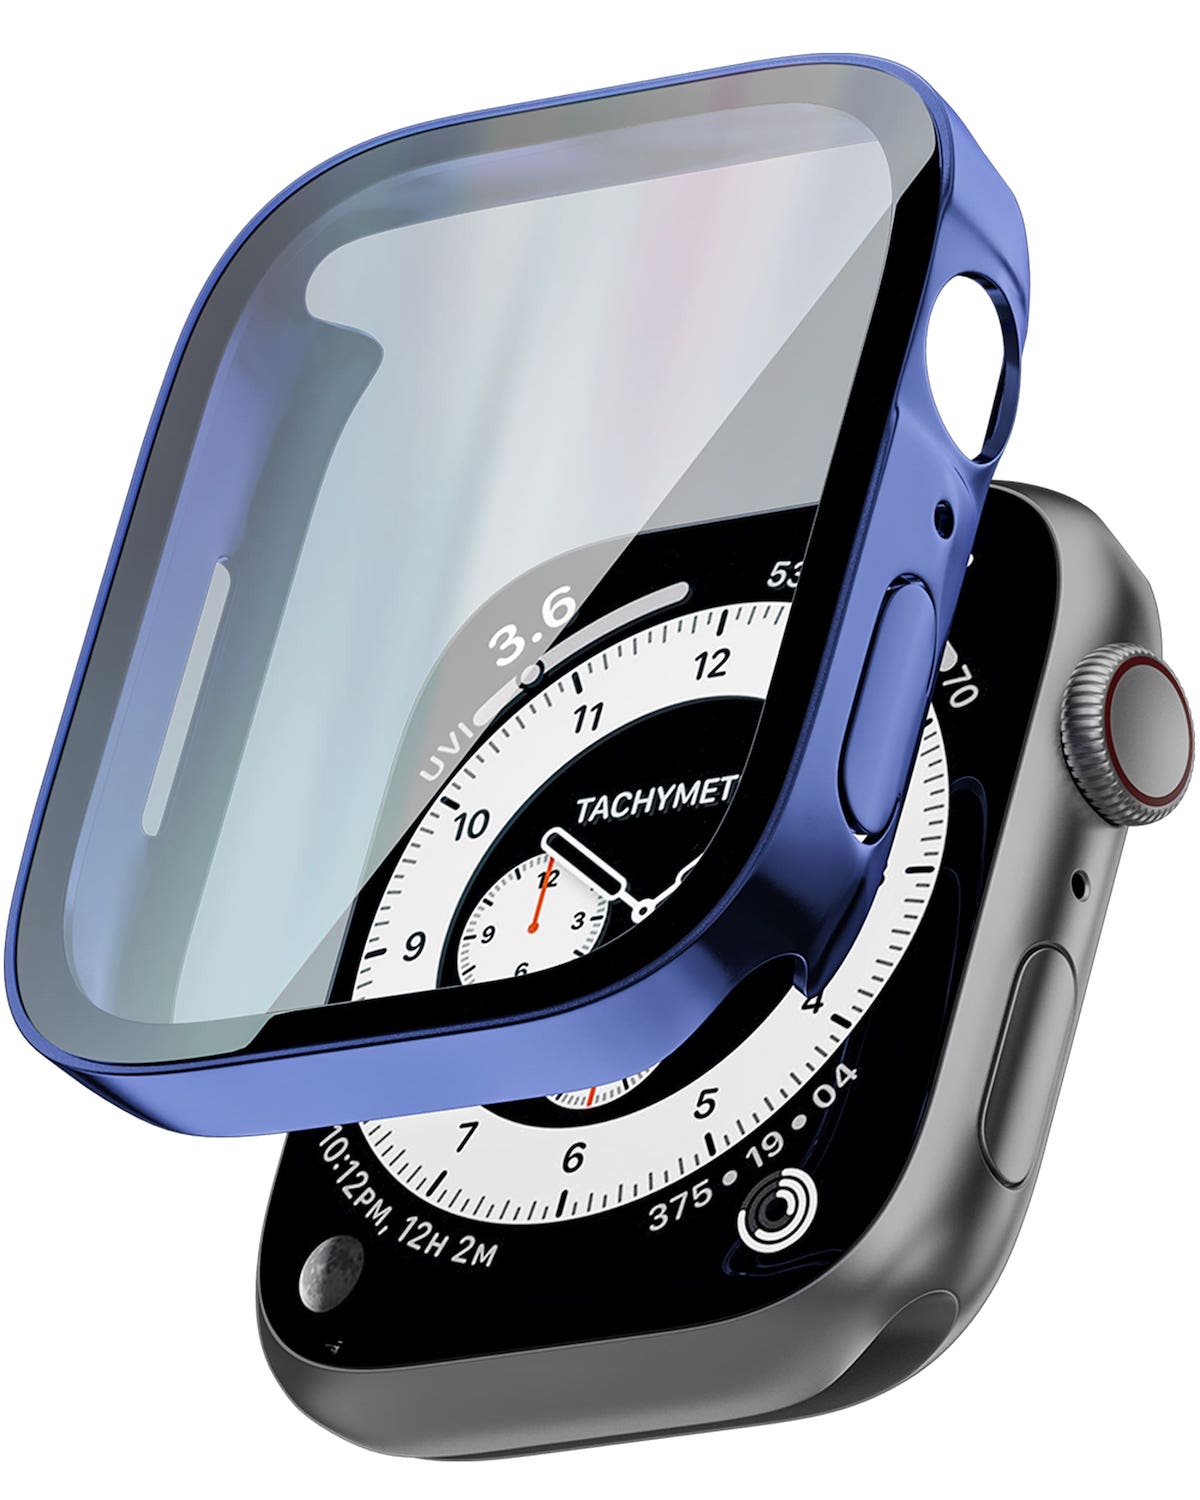 アップルウォッチ カバー ケース apple watch 10H 強化ガラス アップルウォッチカバー 9 SE 8 7 6 5 4 Ultra2 Ultra ウルトラ 40mm 41mm 44mm 45mm 49mm 防水